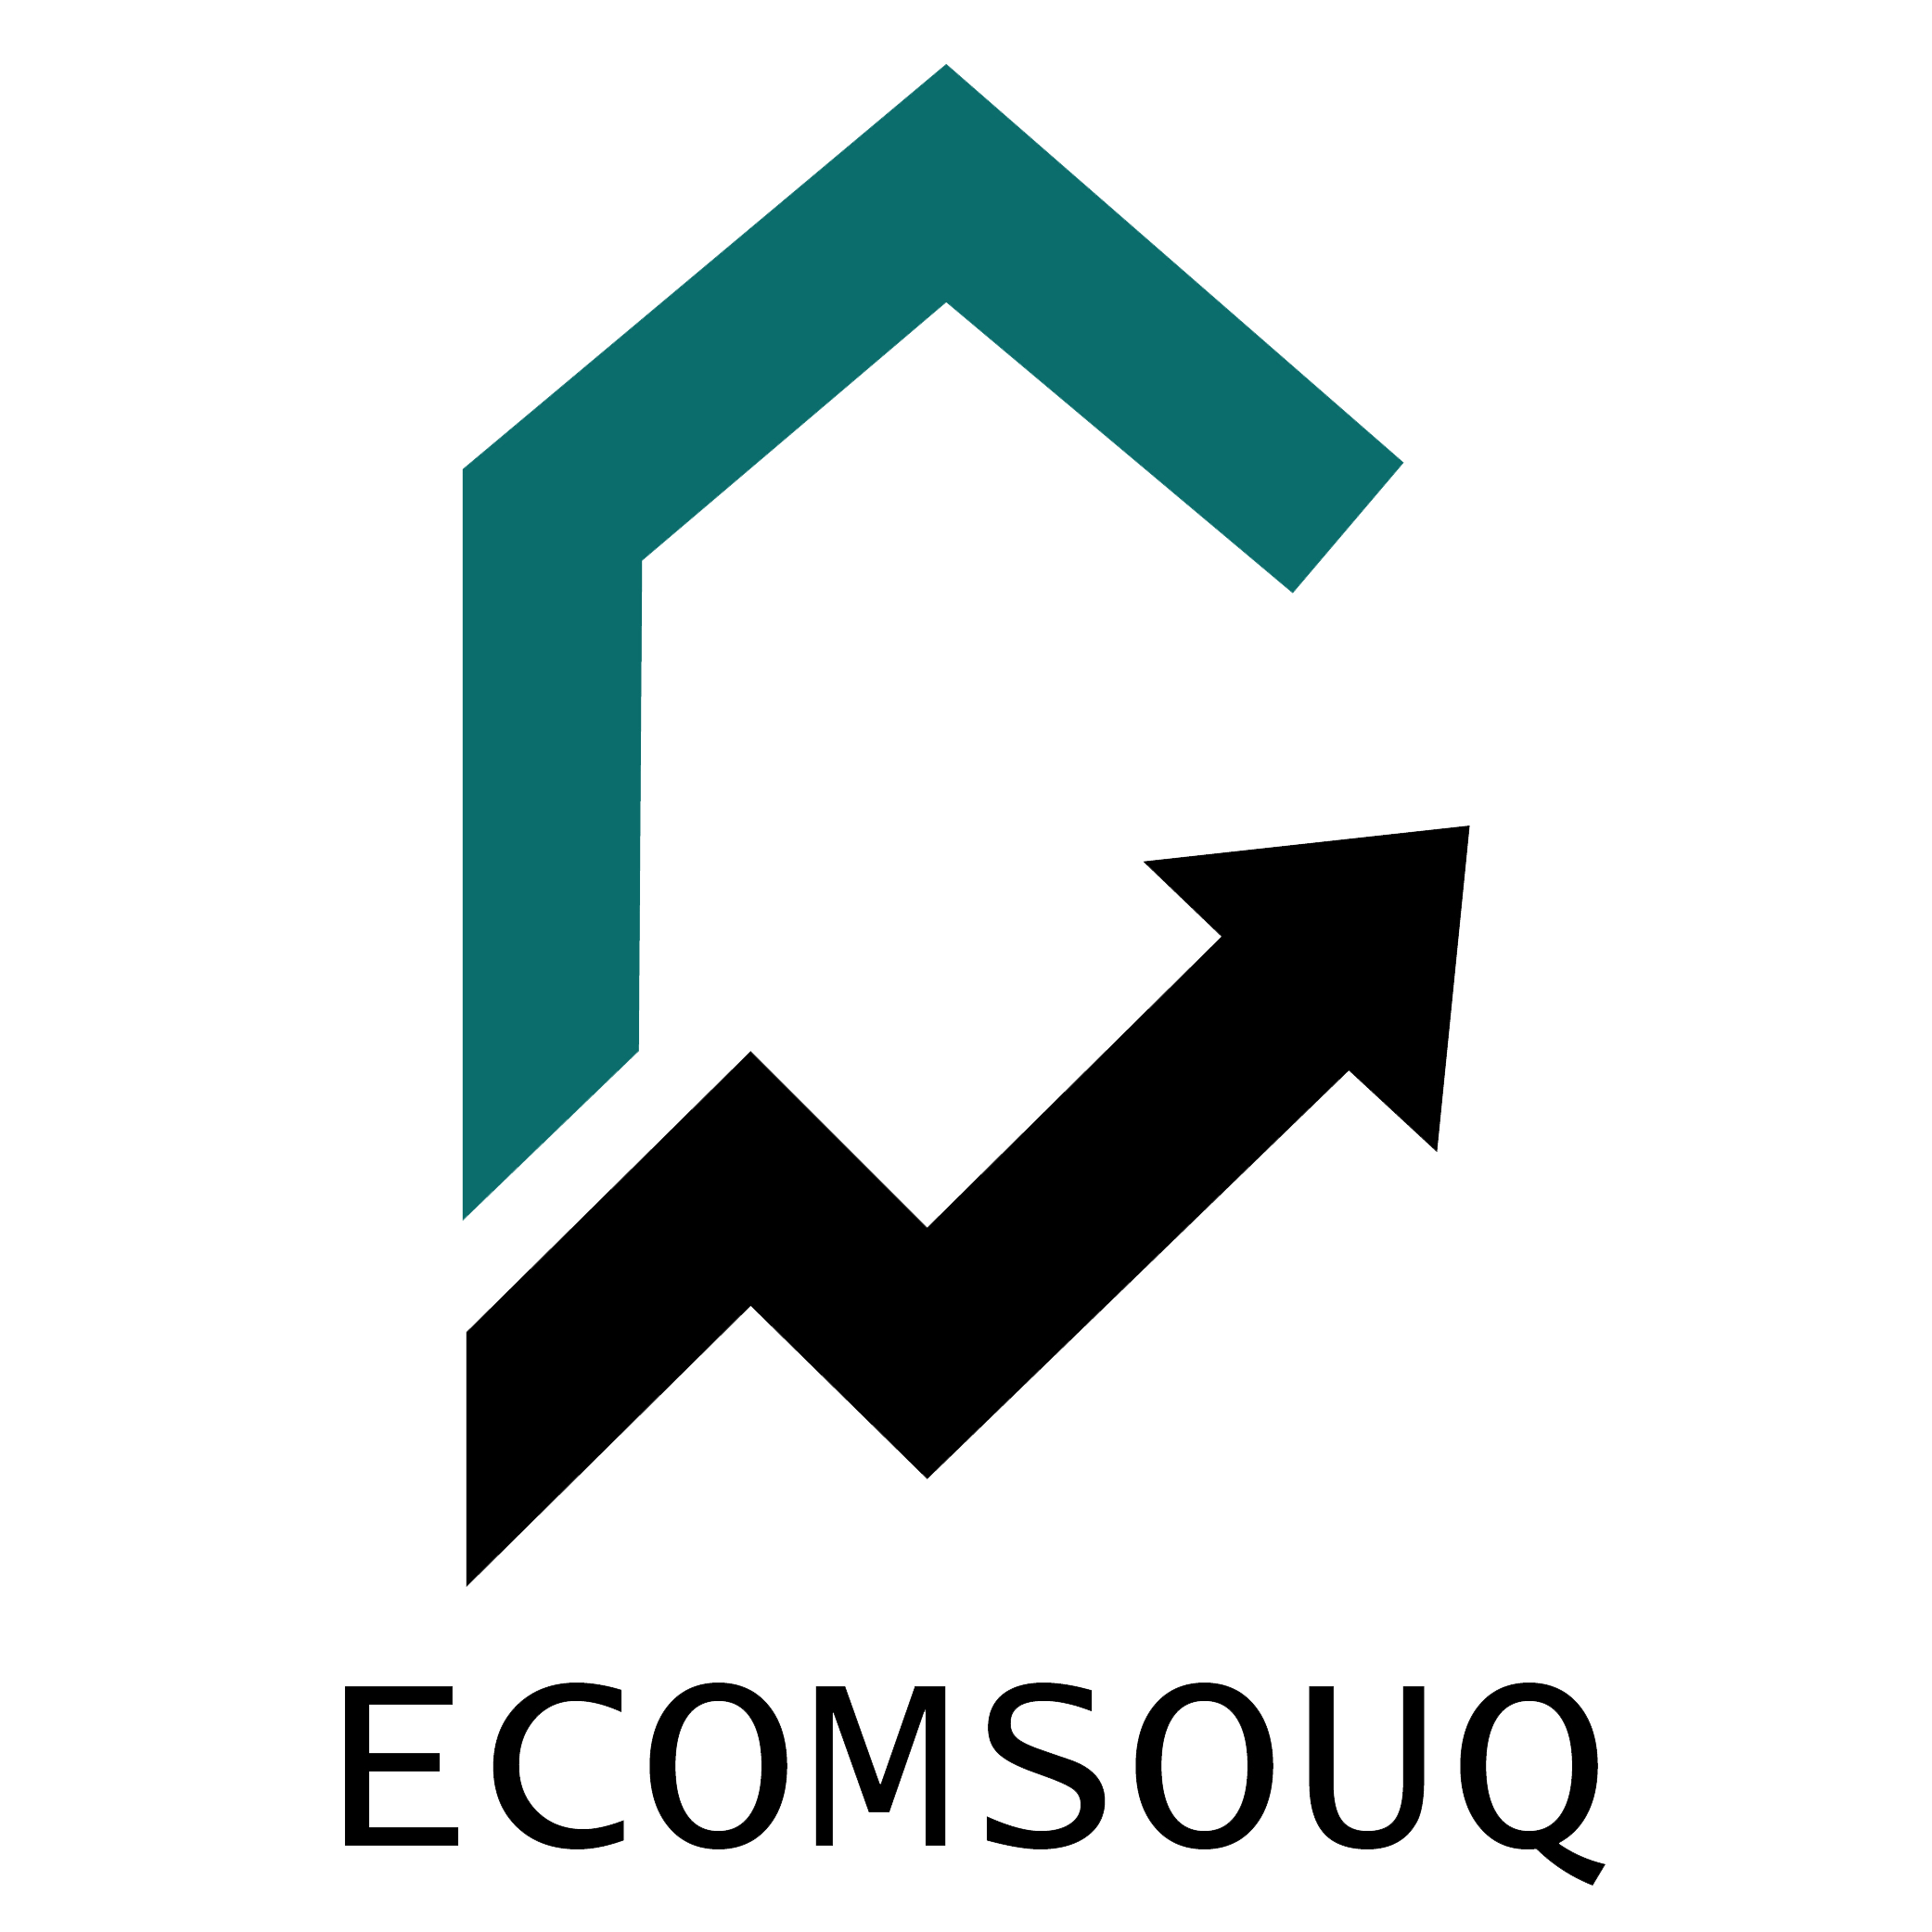 Ecomsouq logo